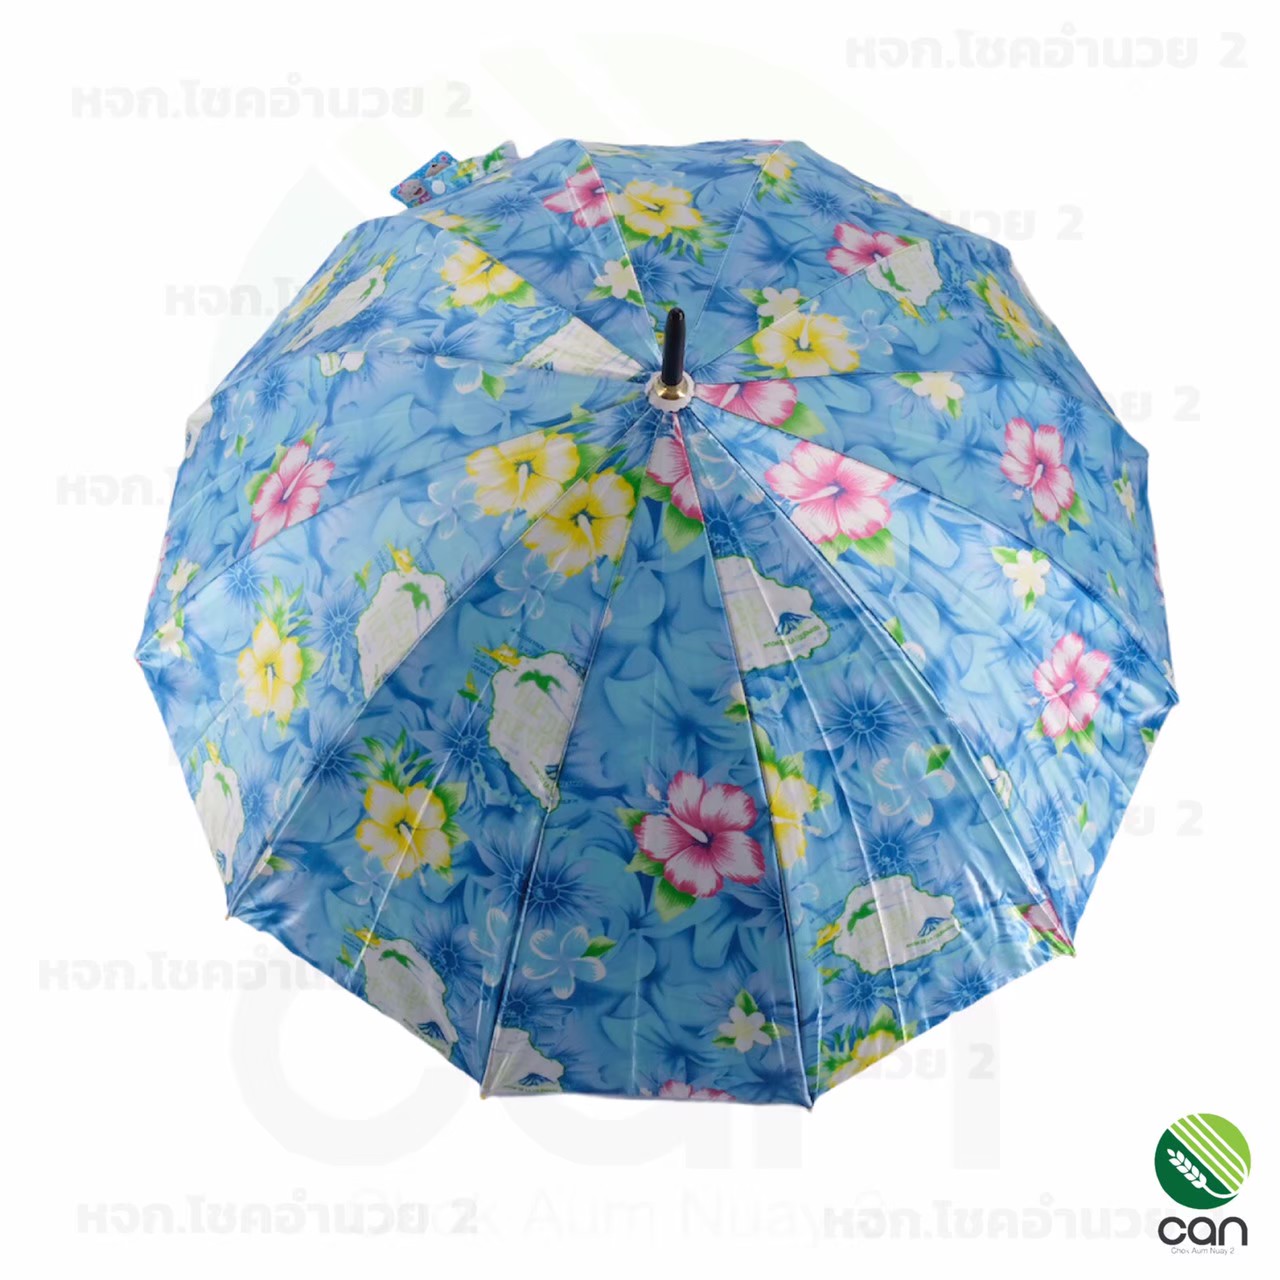 ร่มซาติน ขนาด 22 นิ้ว 12 ก้าน เลือกสีเลือกลายได้ คละสี คละลาย ร่มพกพา ร่มกันแดด ร่มกันUV Umbrella ร่มถือ